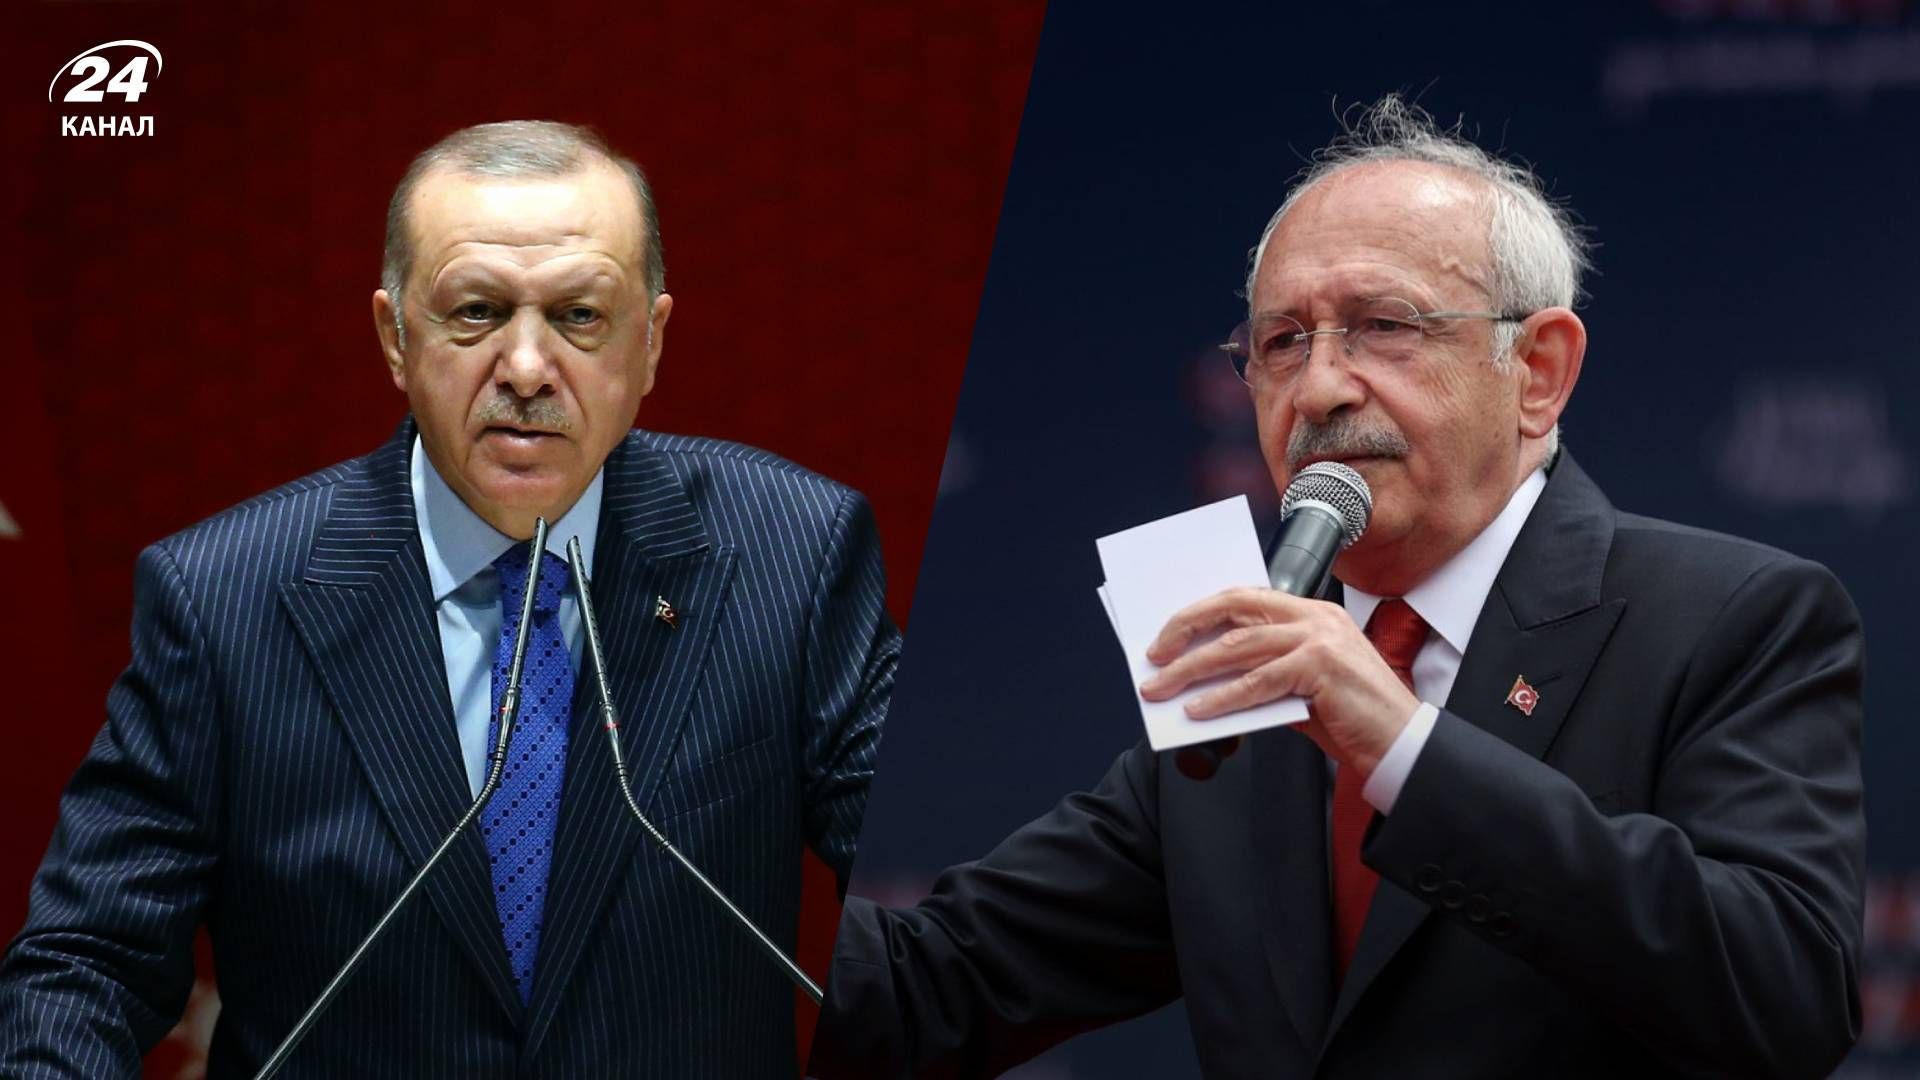 Вибори в Туреччині 14 травня 2023 року - які  плюси та мінуси фаворитів